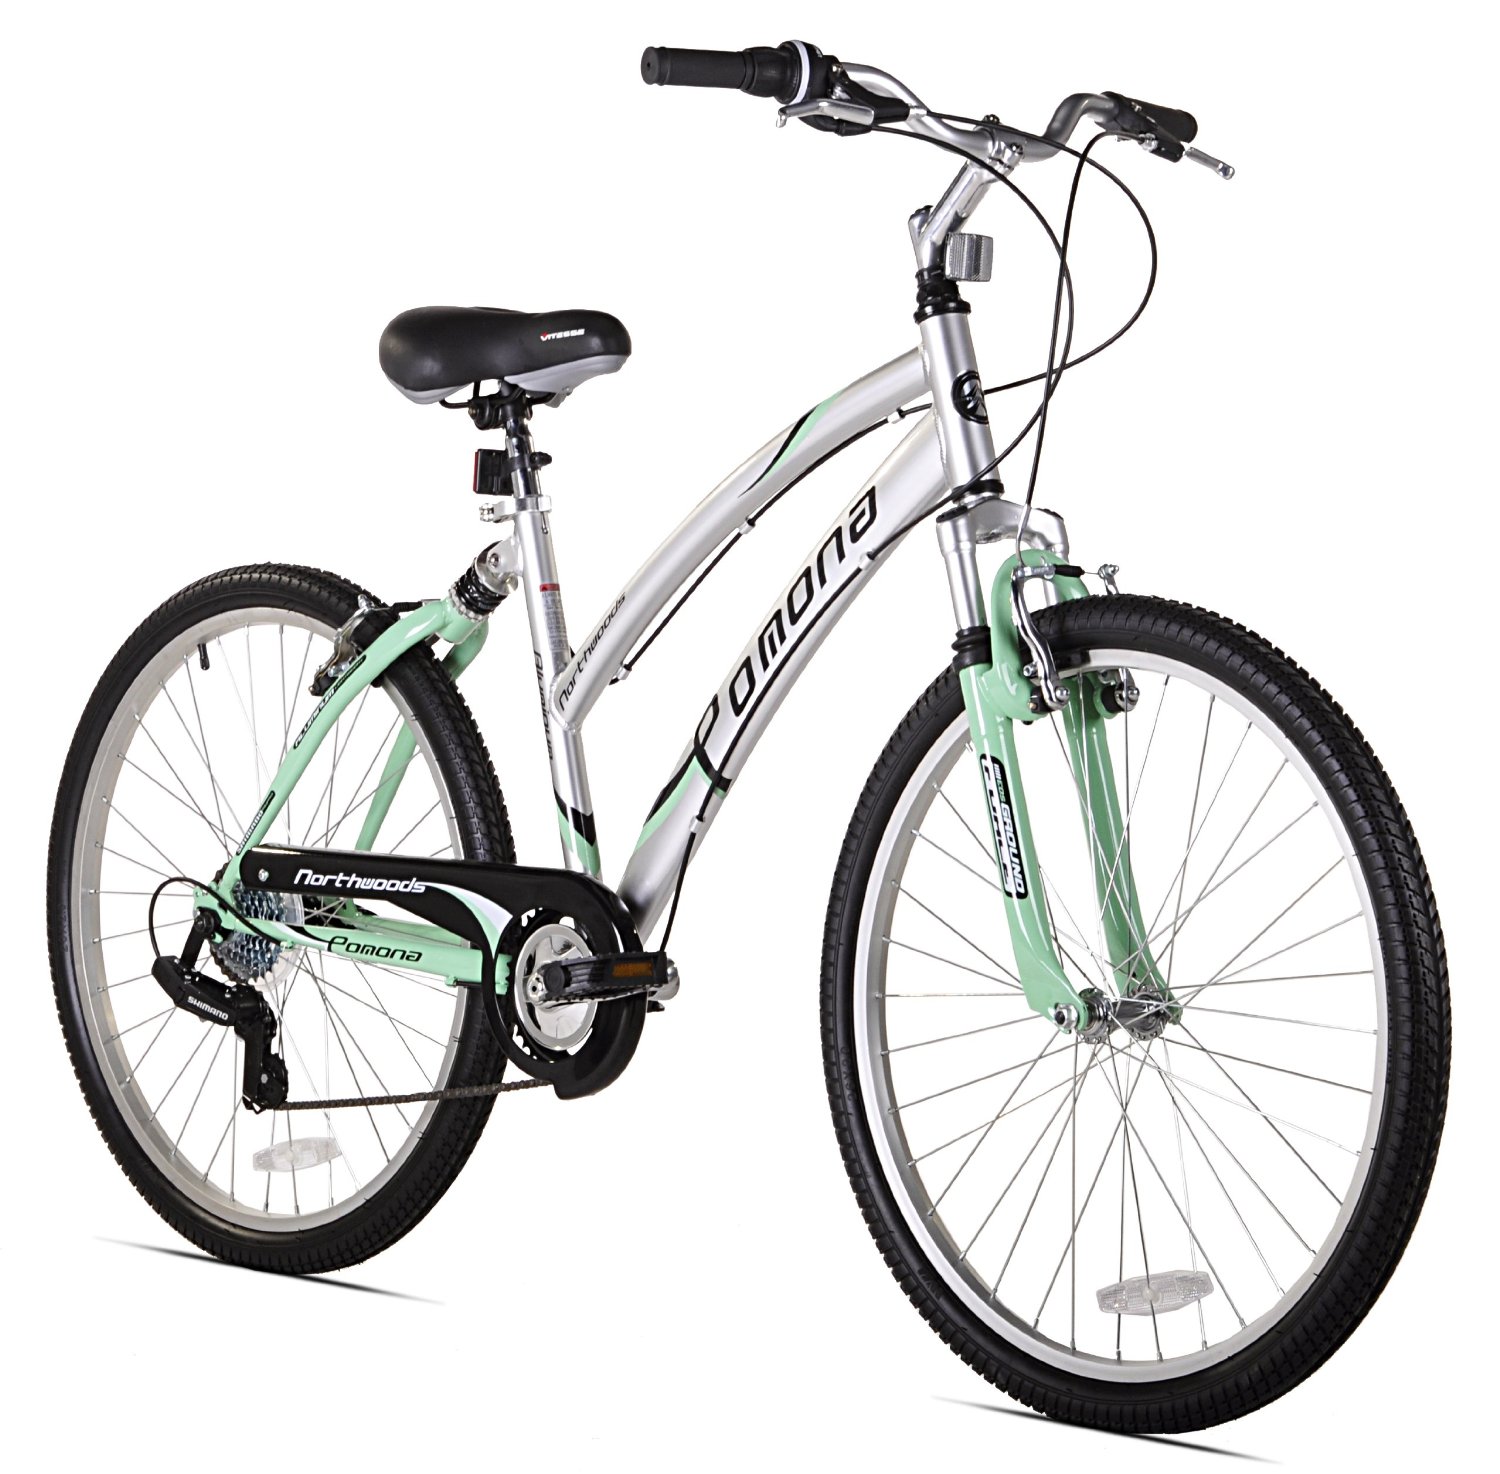 northwoods pomona comfort bike image